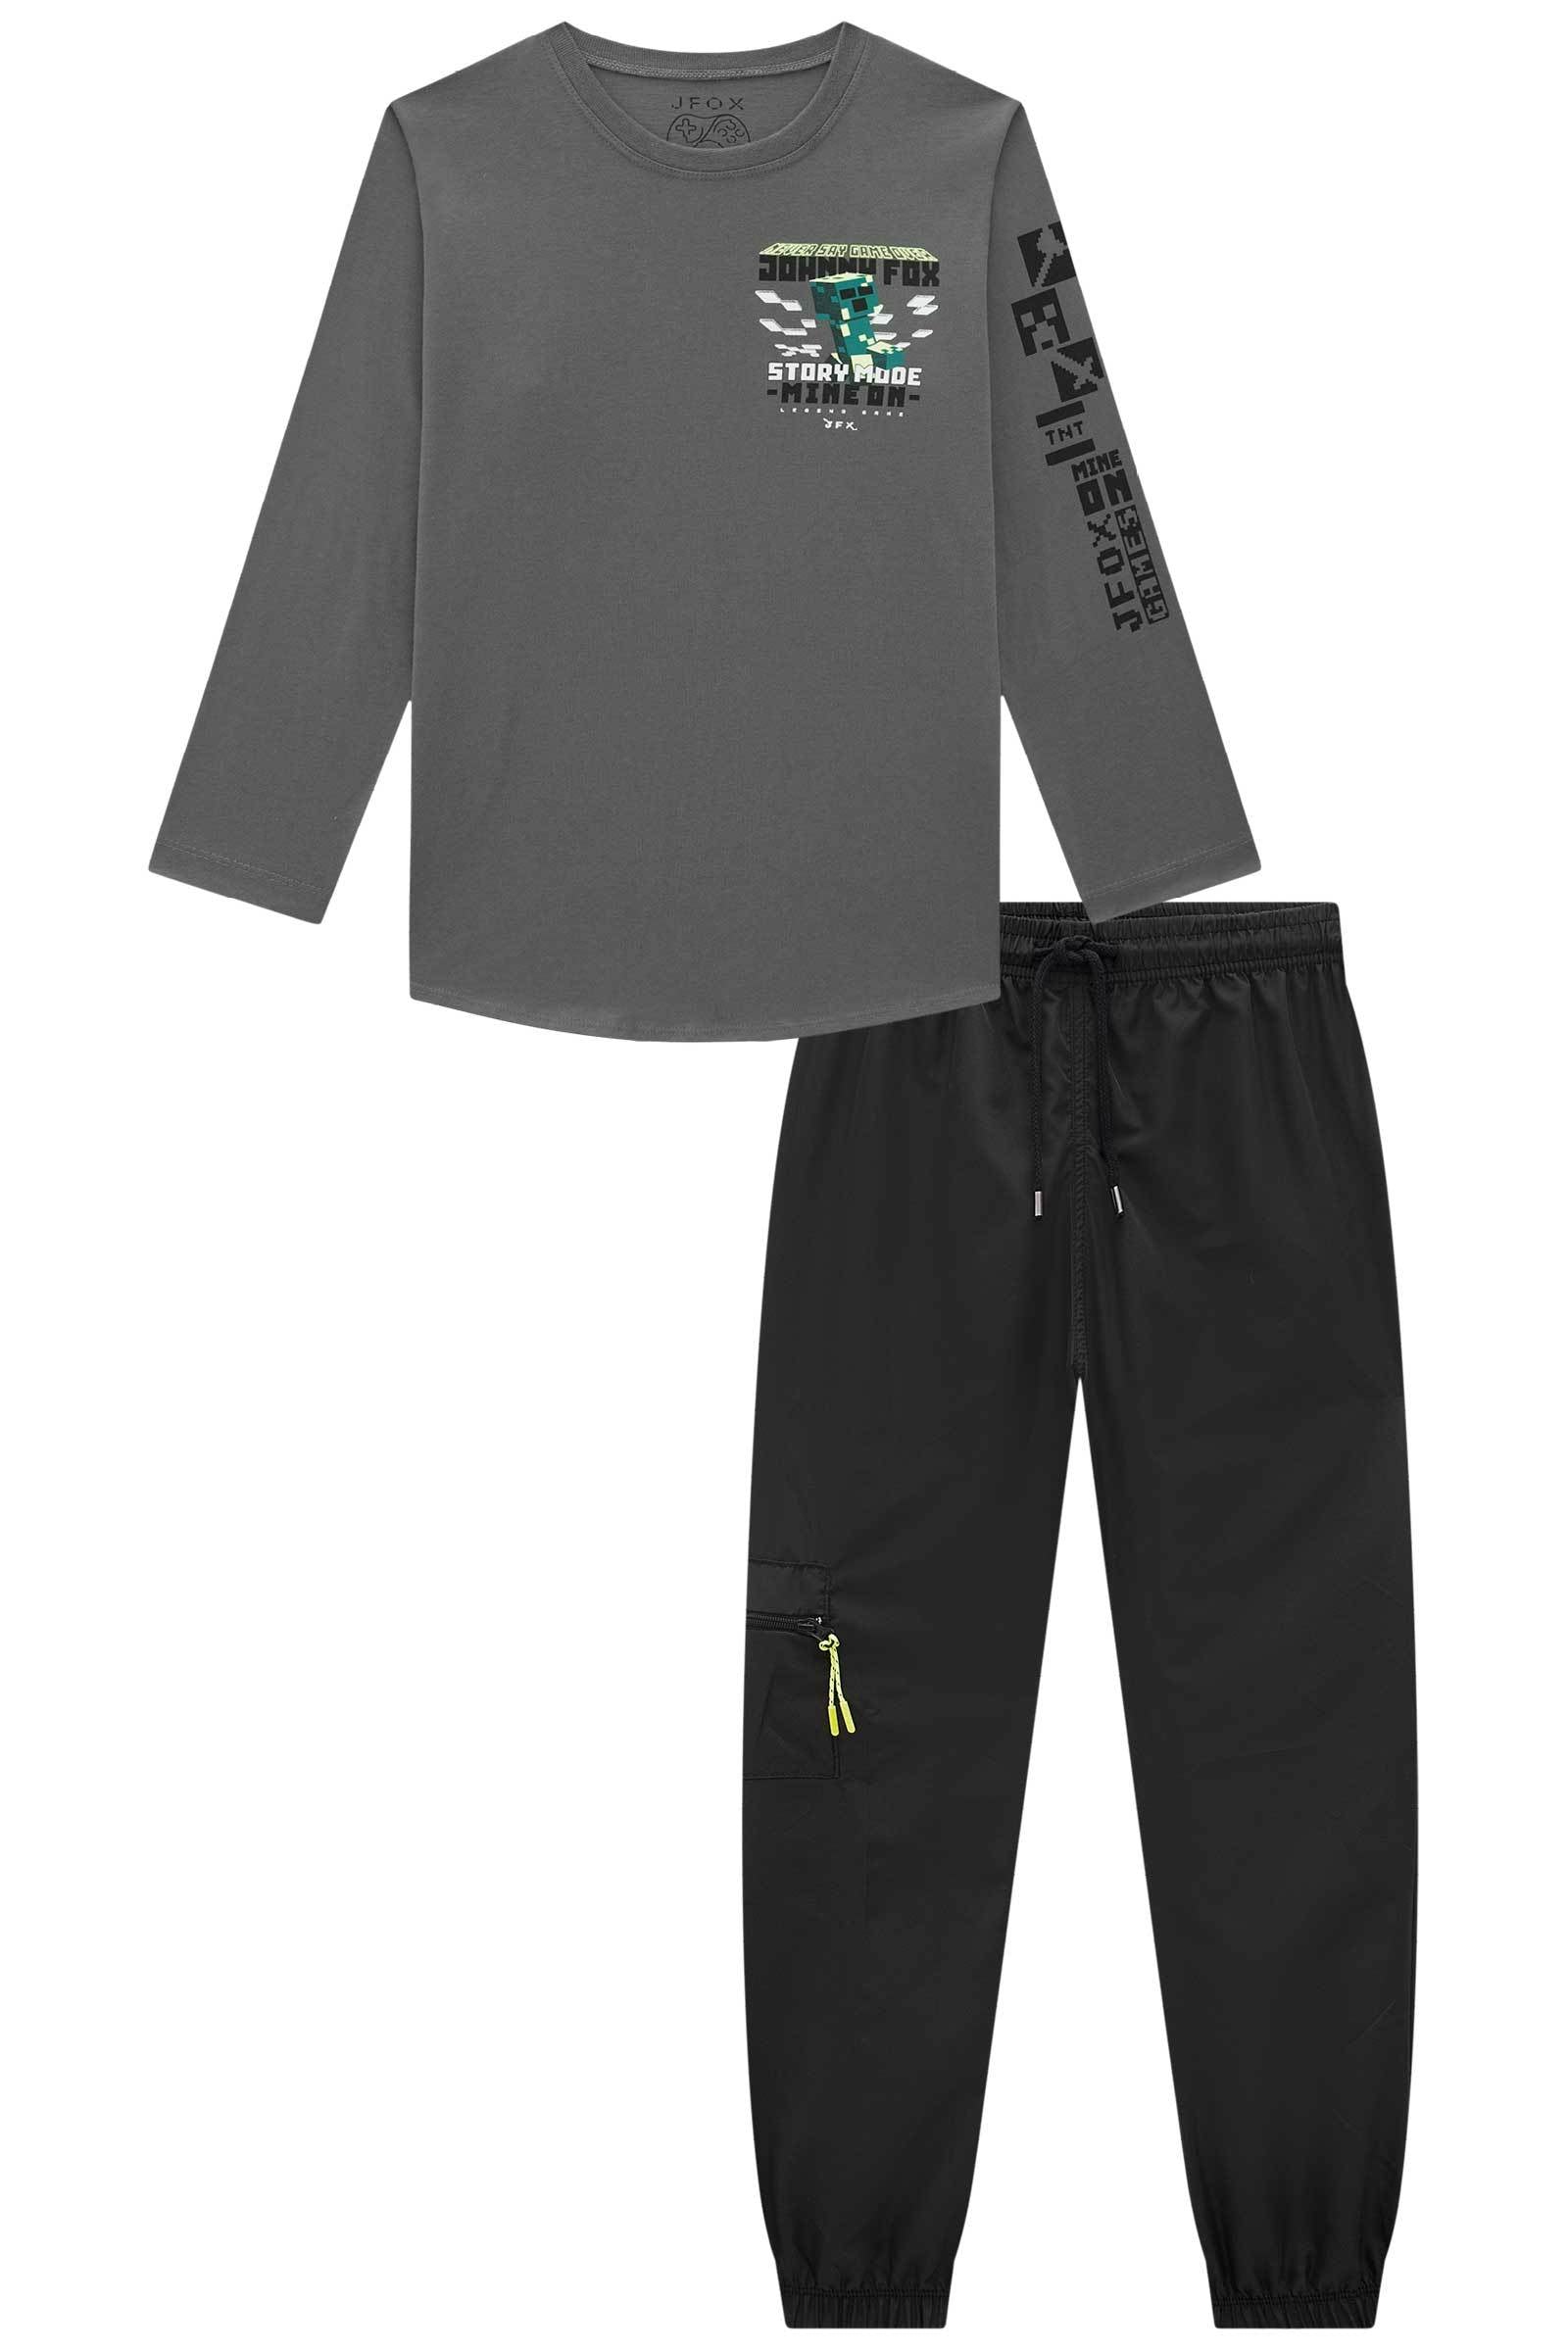 Conjunto de Camiseta em Meia Malha e Calça Jogger em Nylon Aspen 72010 Johnny Fox